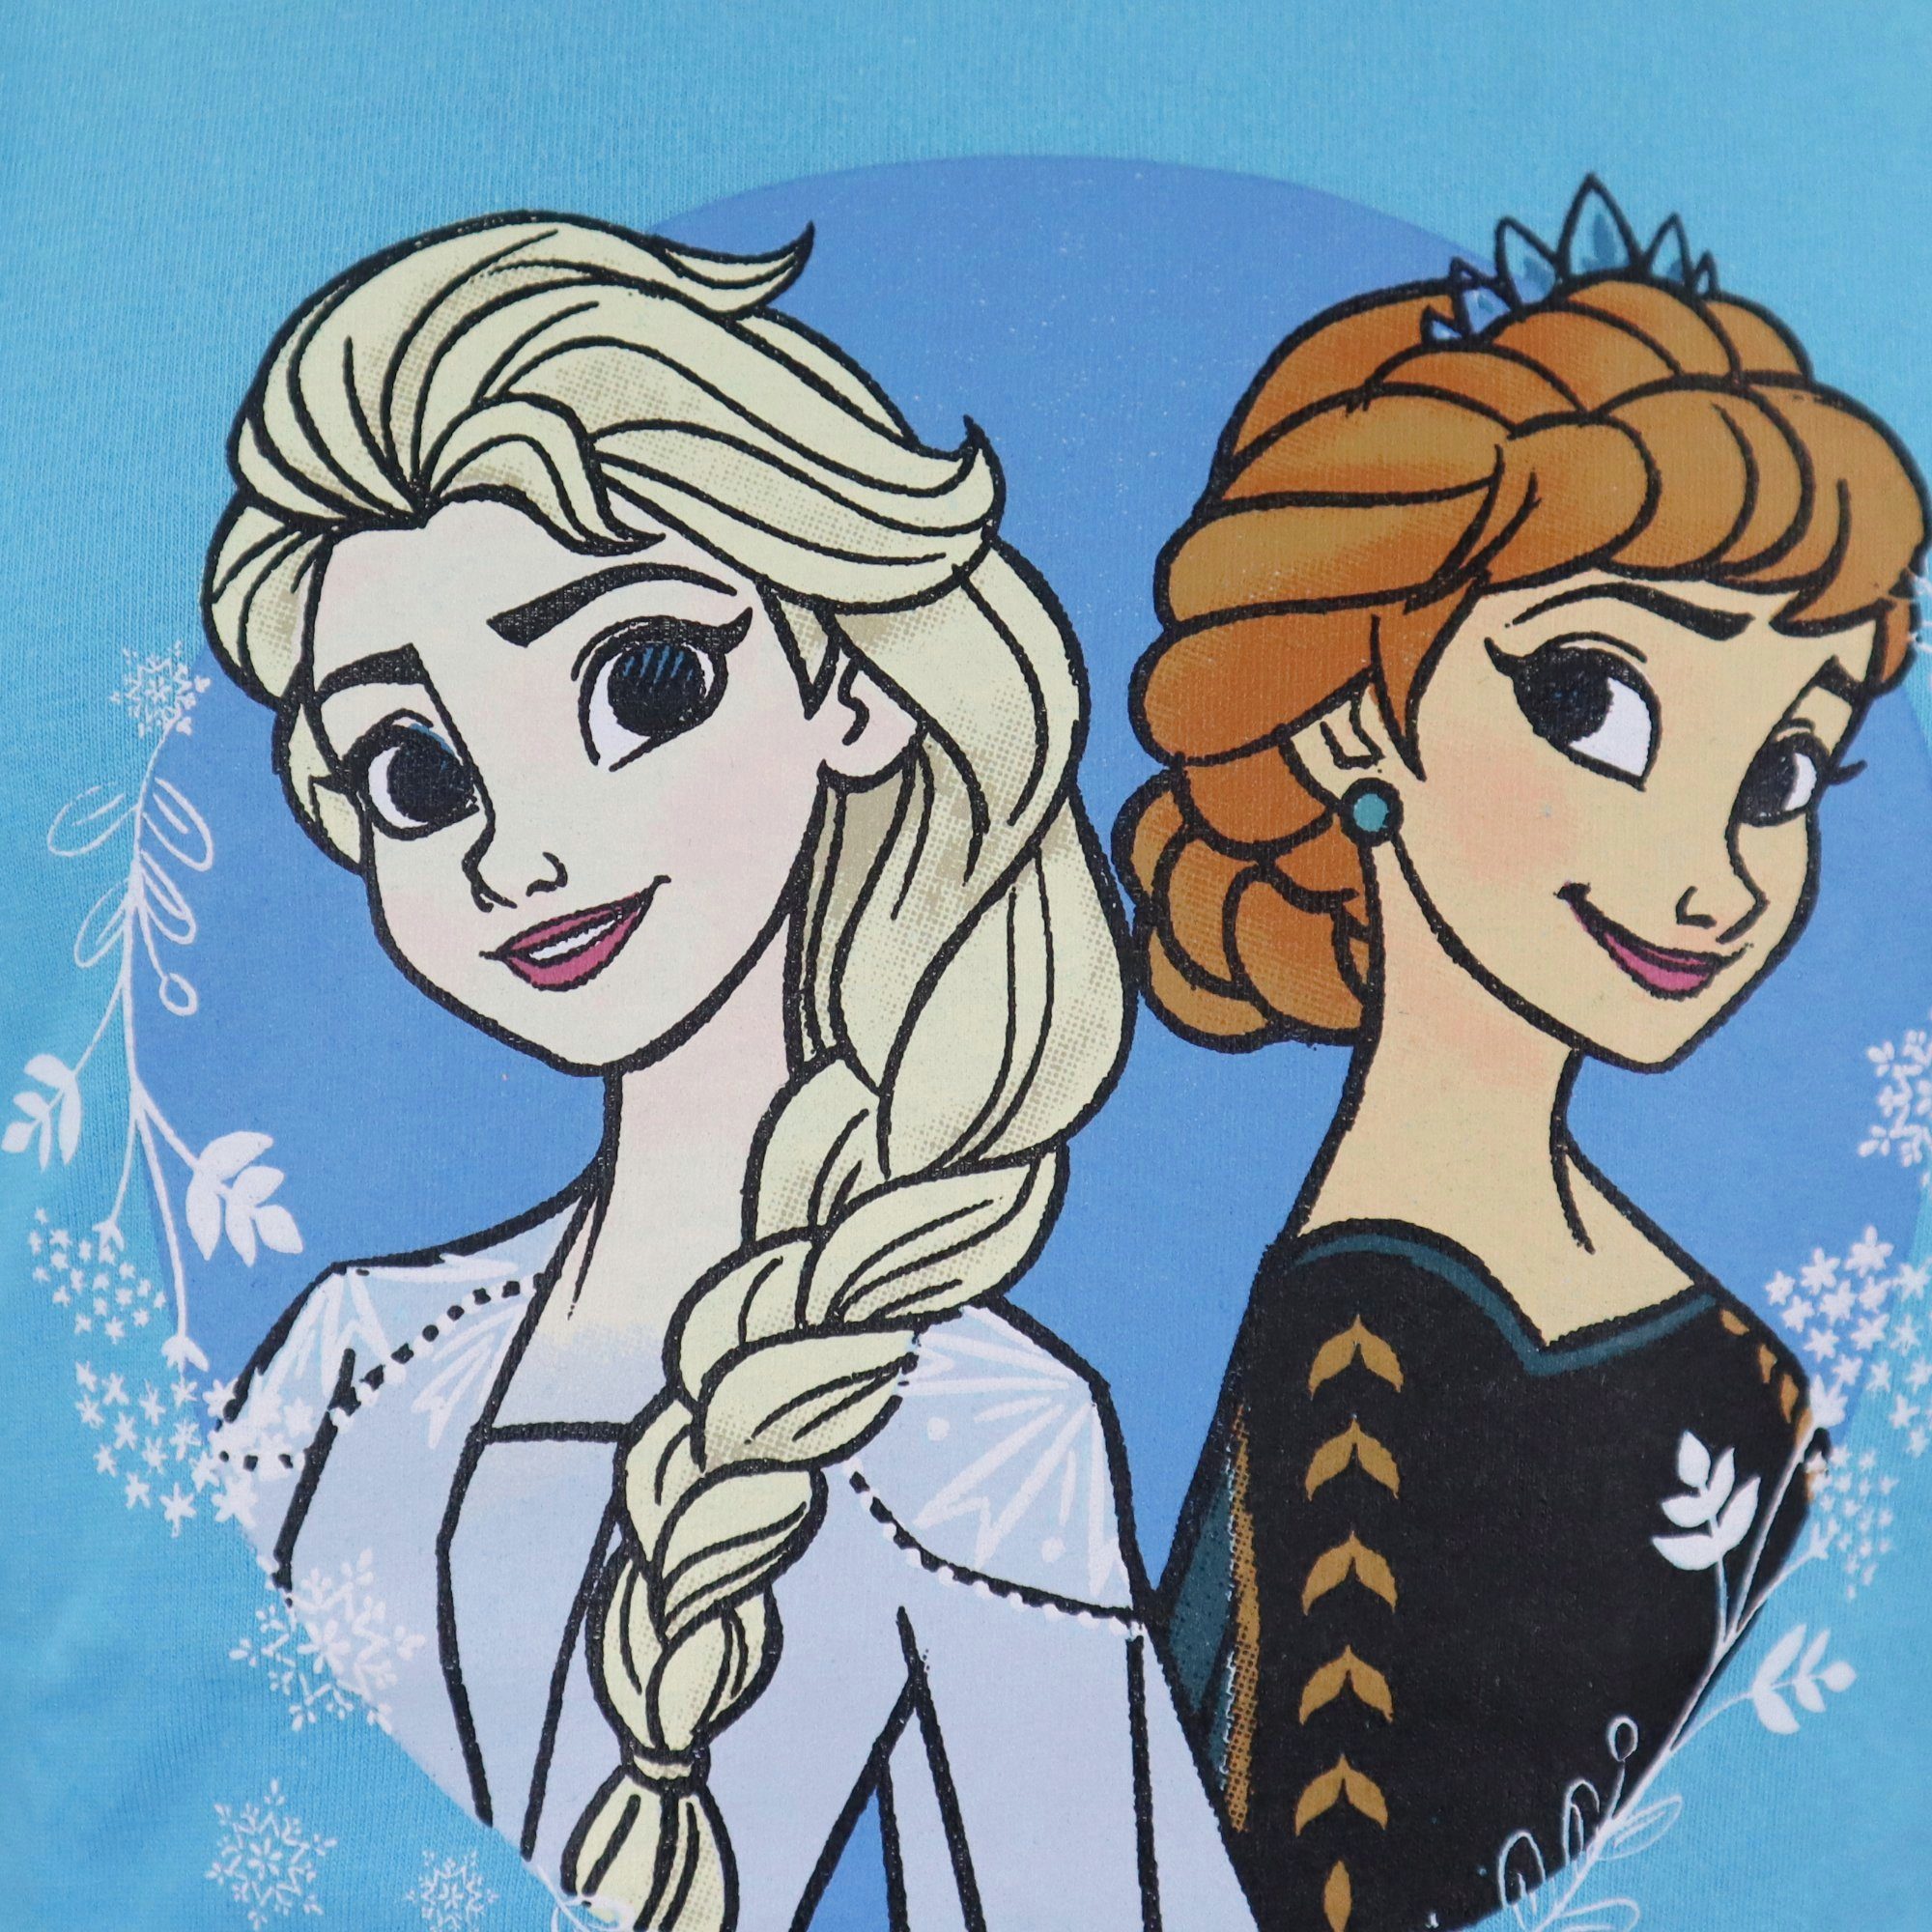 Disney Frozen Eiskönigin Kinder Mädchen Schlafanzug Baumwolle 104 Gr. Blau und 134, Anna Die Pyjama Elsa bis